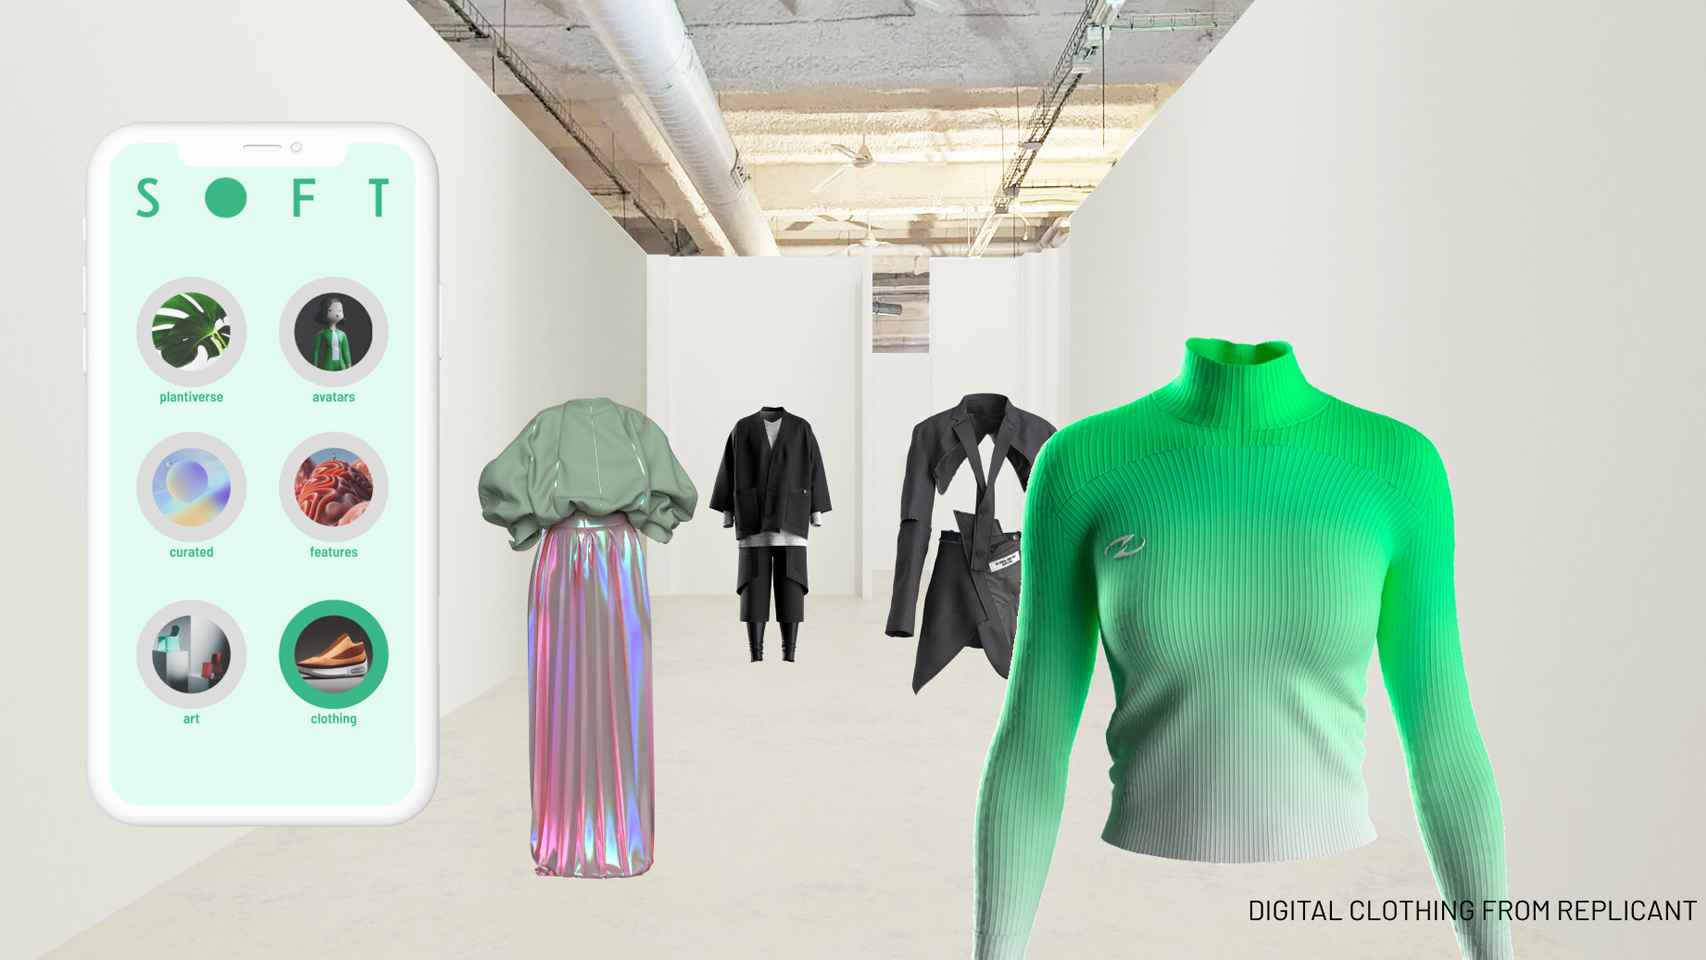 Ejemplo de tienda que se puede crear con SOFT usando realidad aumentada y realidad virtual.